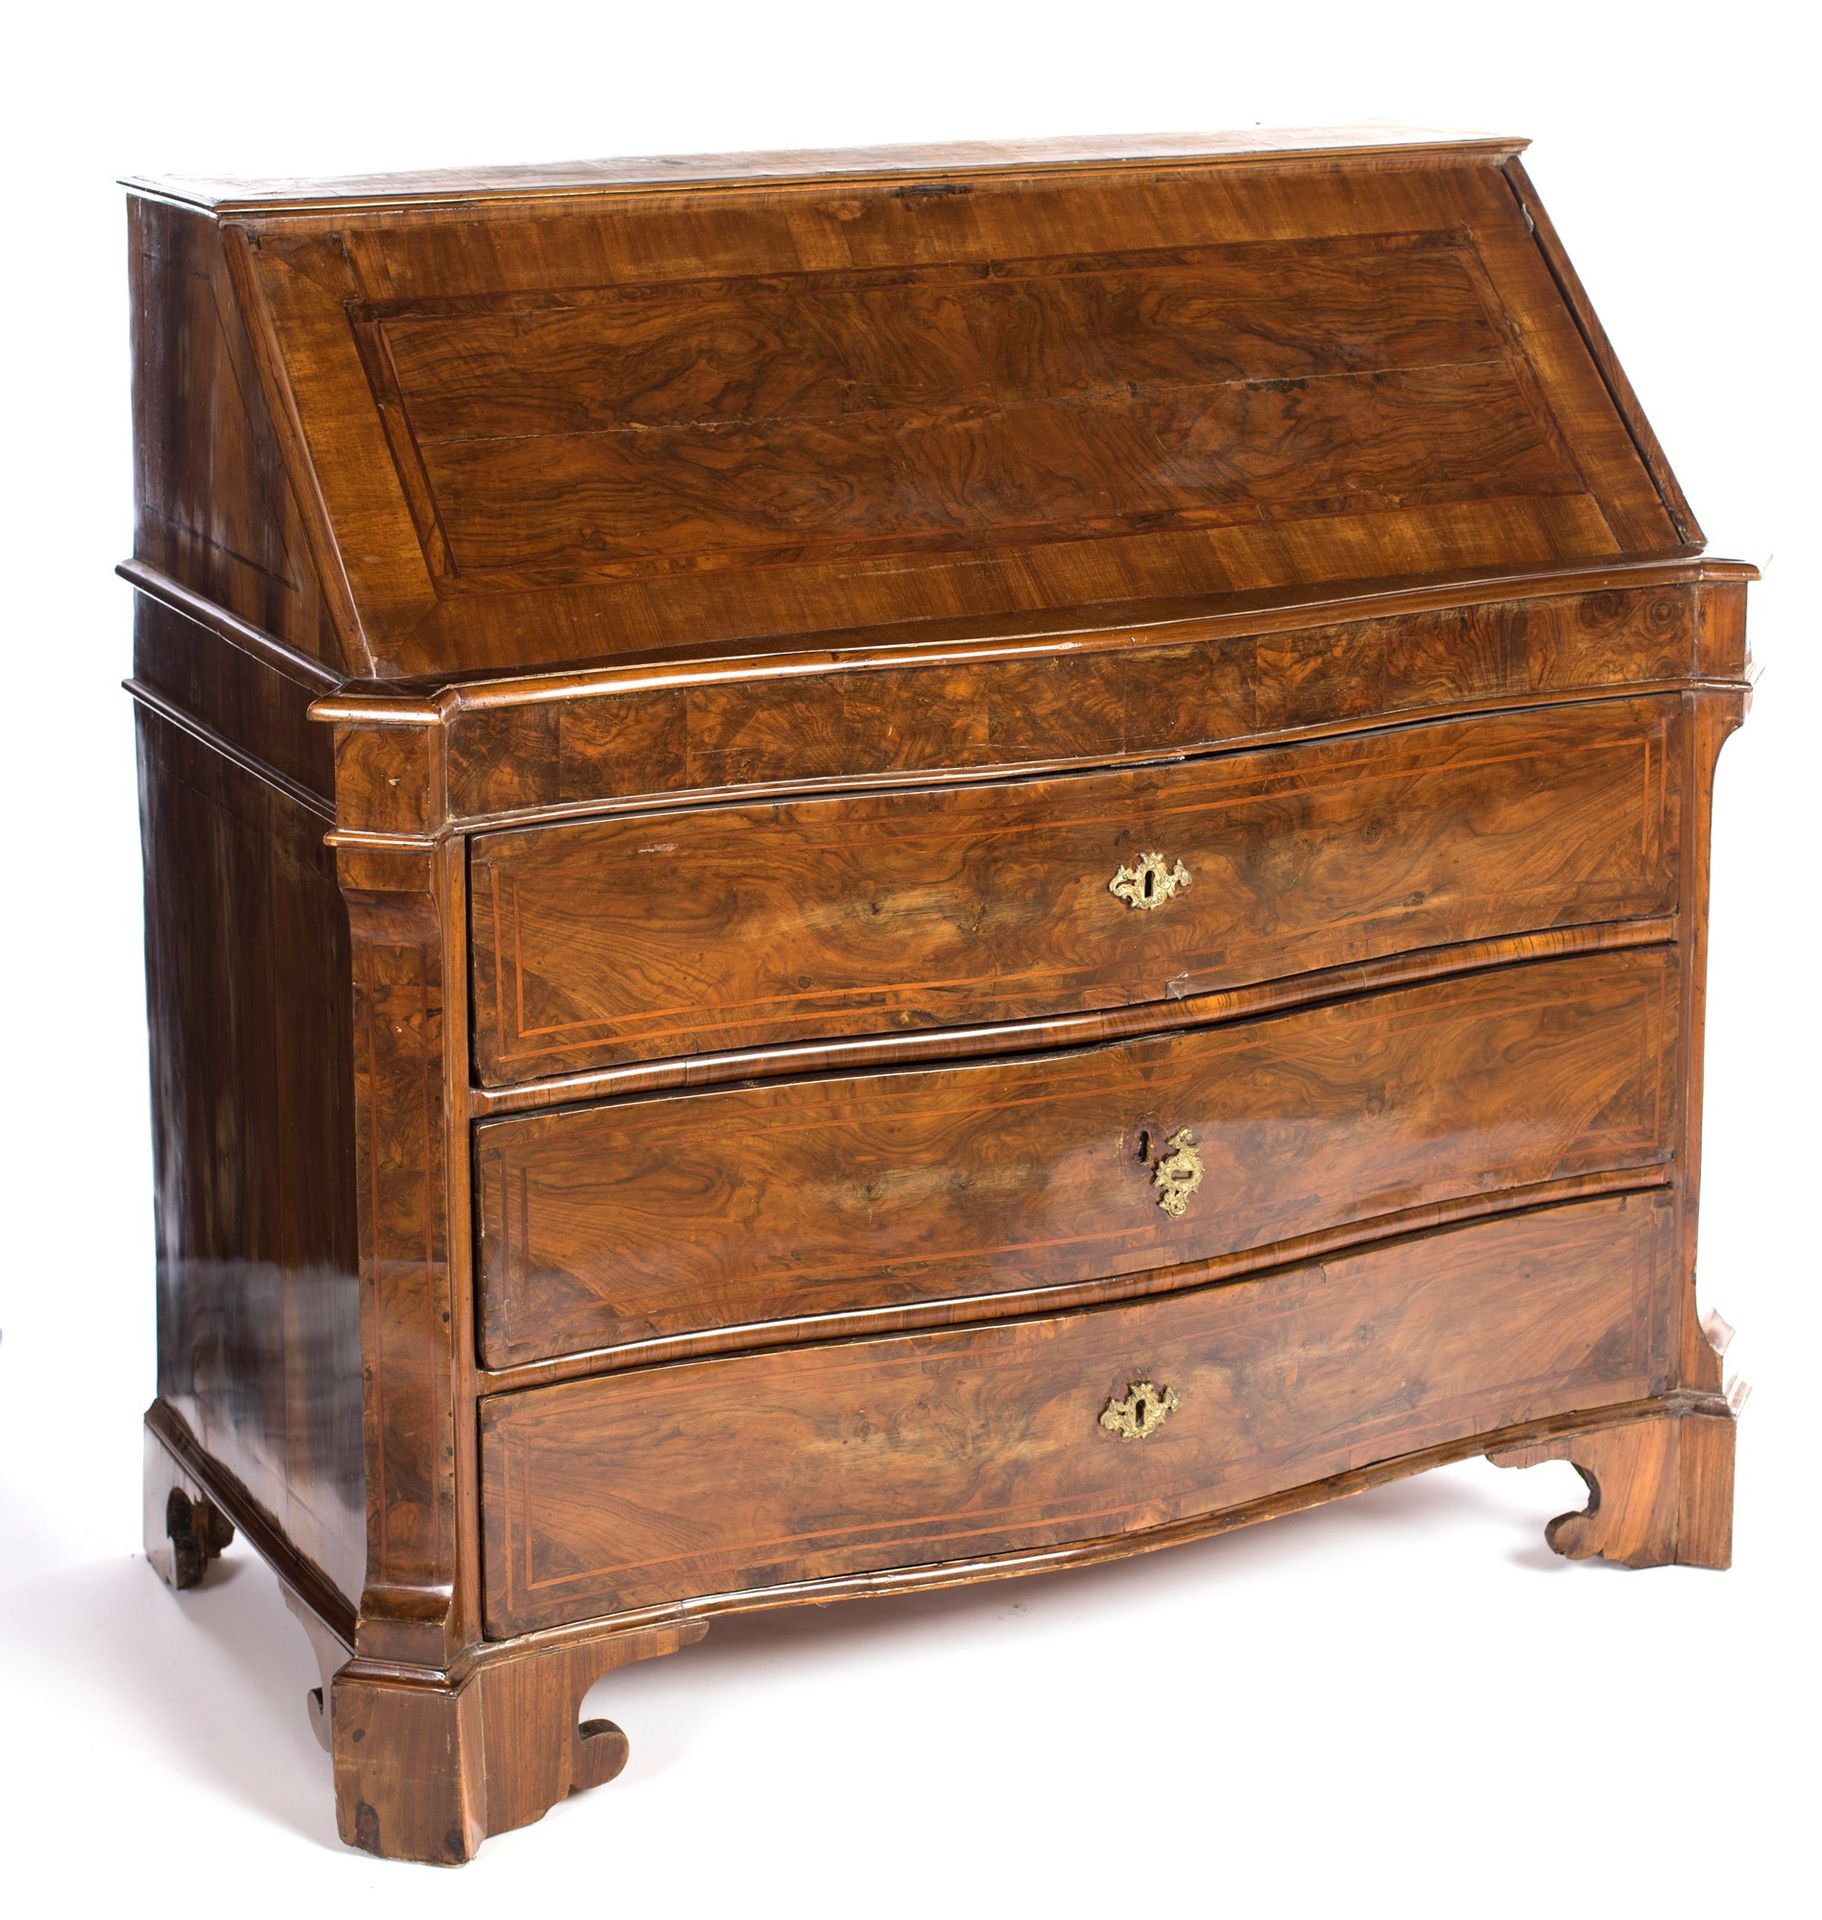 Drop-leaf chest of drawers in walnut wood avec des panneaux délimités par des fi&hellip;